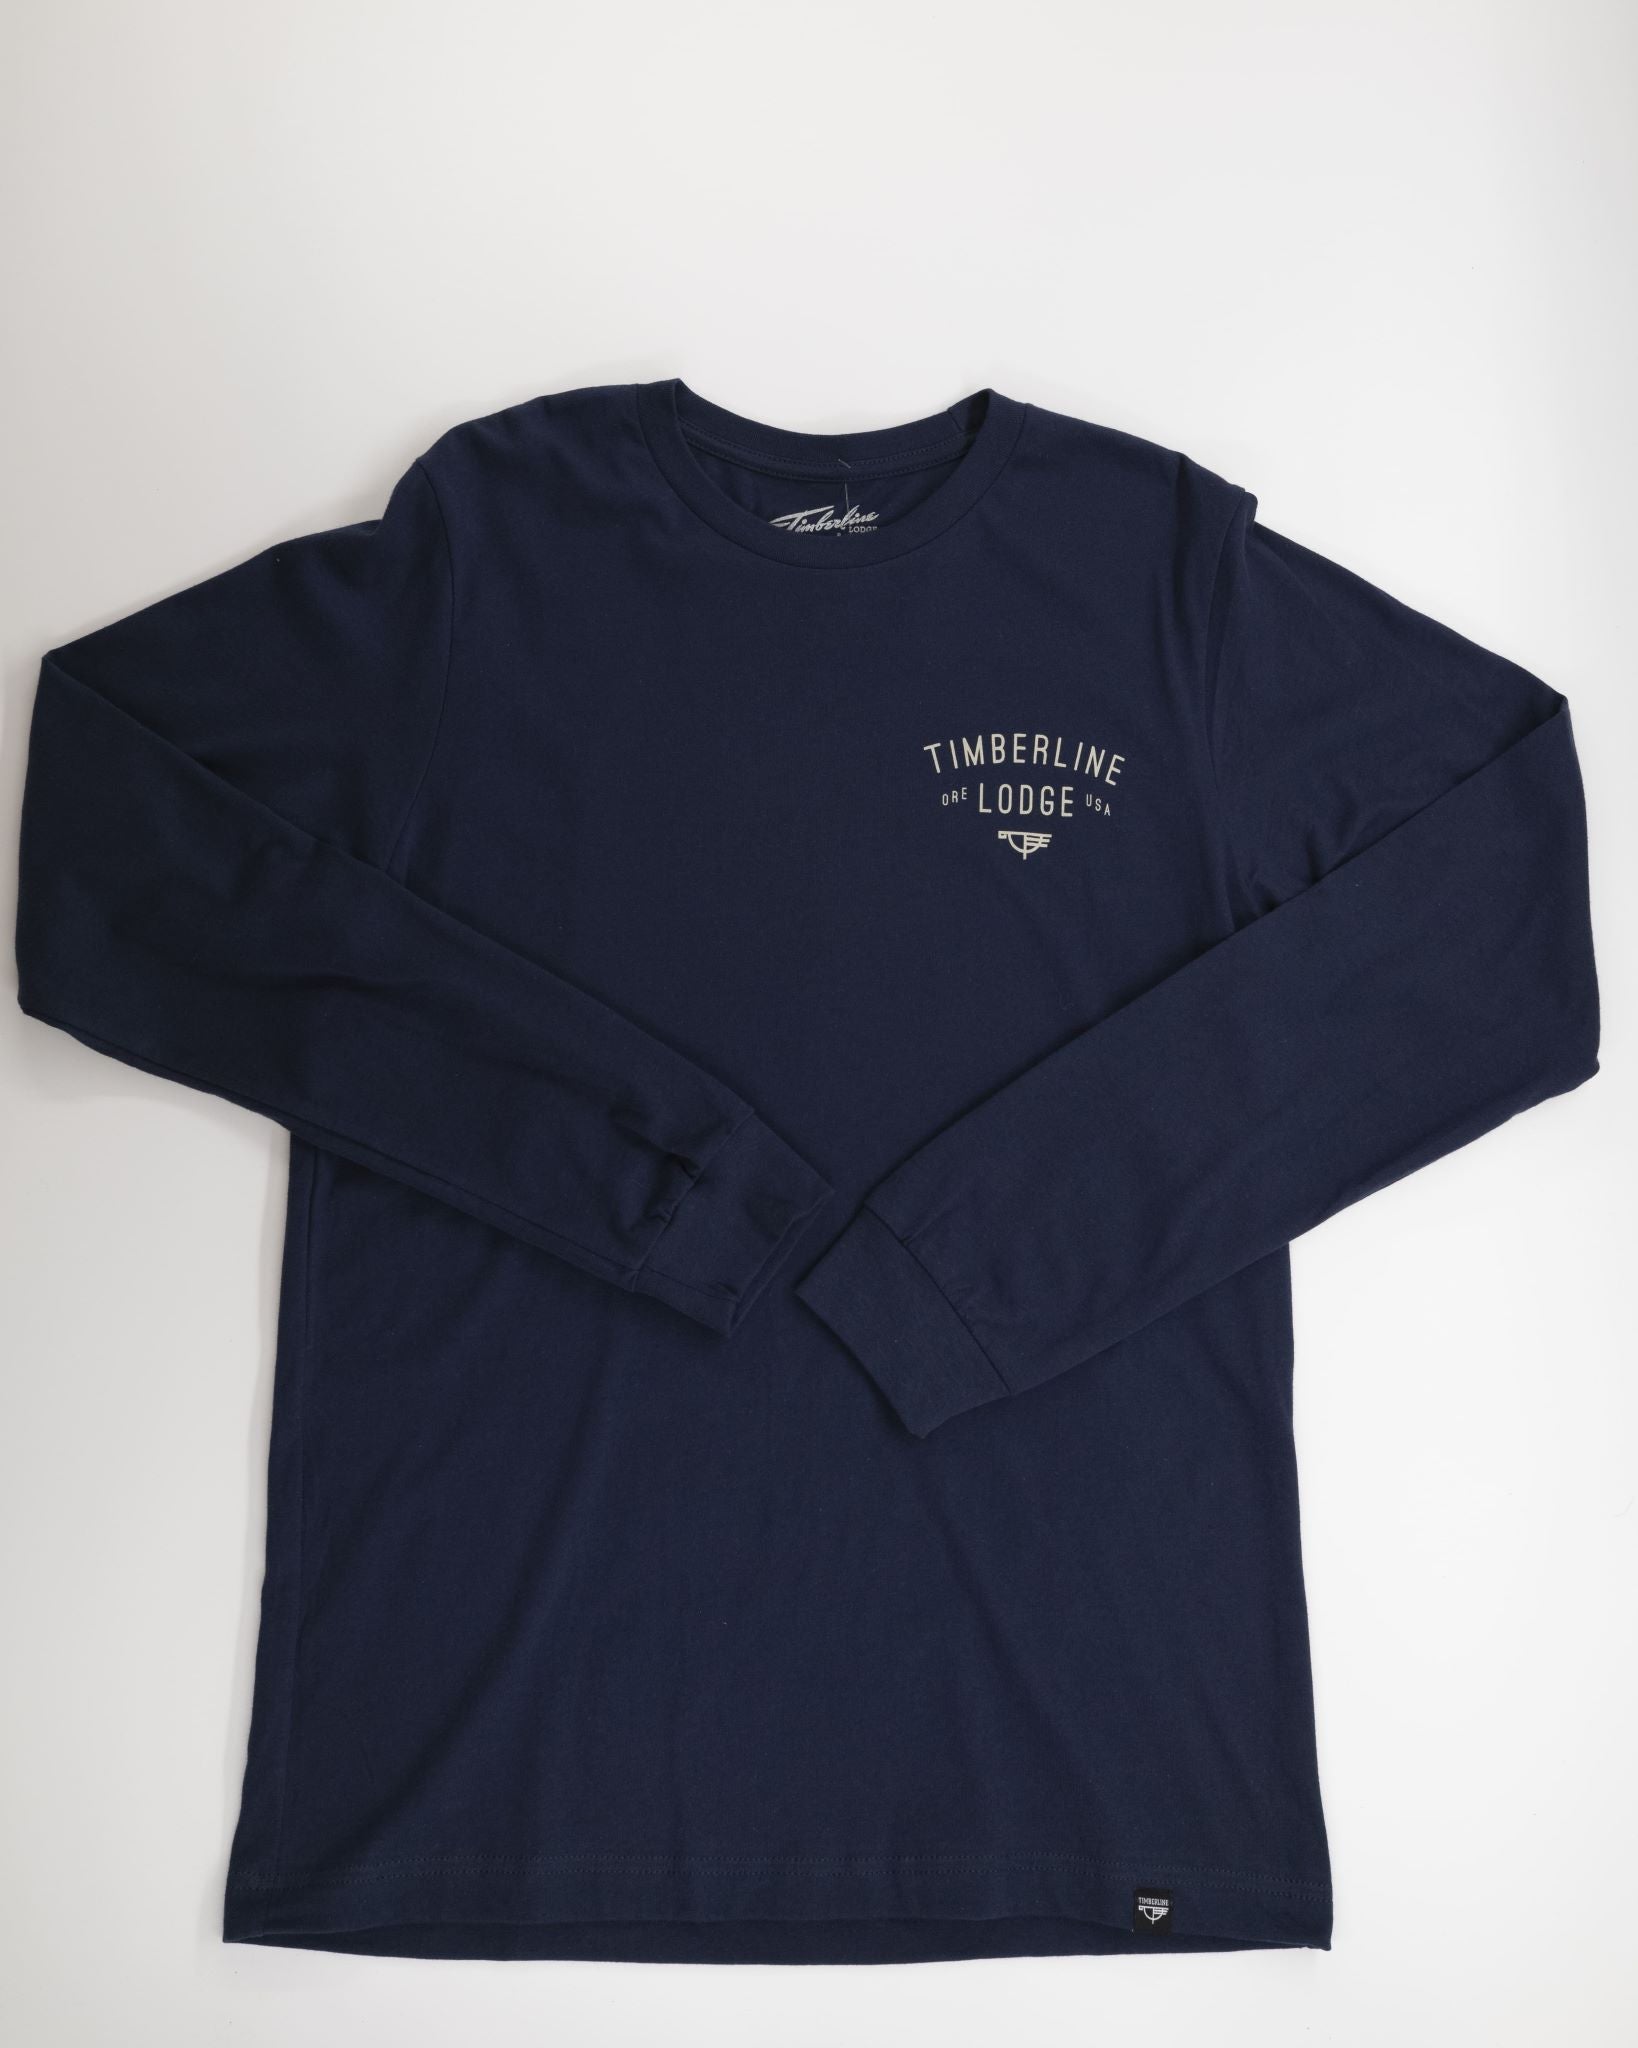 Arrowhead Fire Adult Long Sleeve Shirt